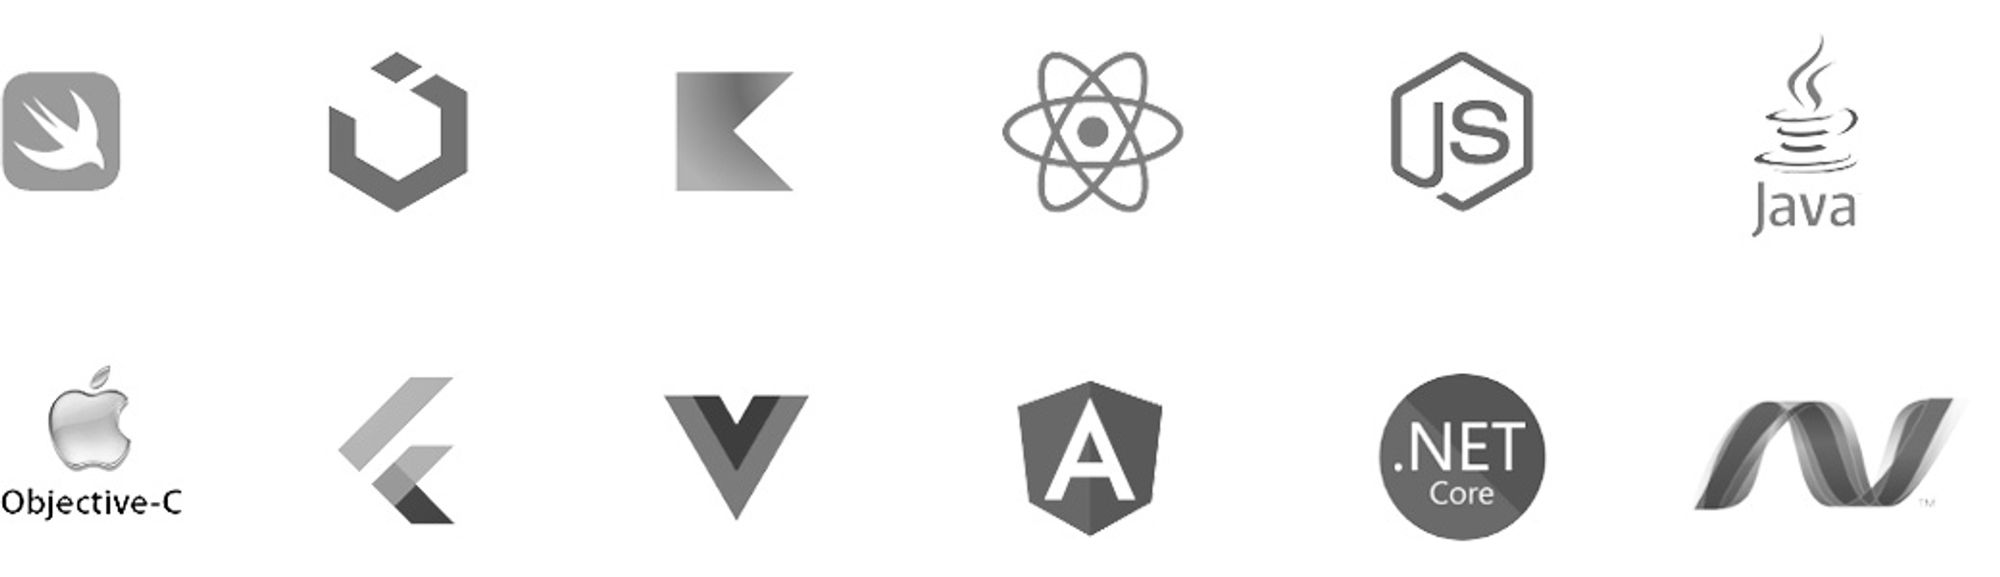 Icons of Swift, UI Kit, Kotlin, React, NodeJS, Java, Objective-C,  Flutter, VueJS, Angular, .NET Core, and ASP.NET